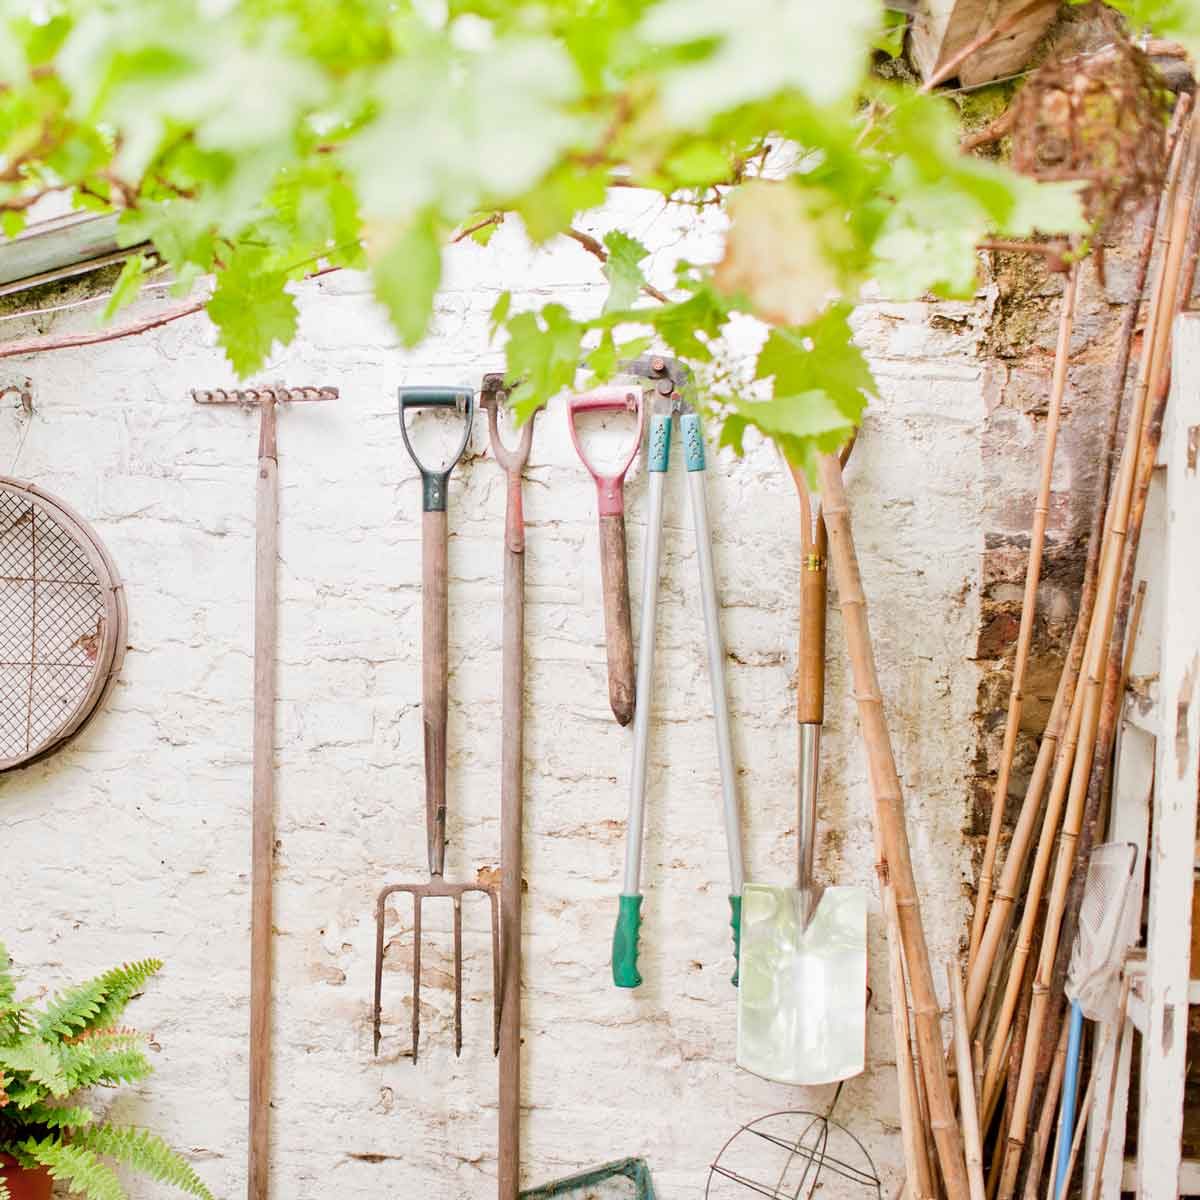 Best Garden Tools